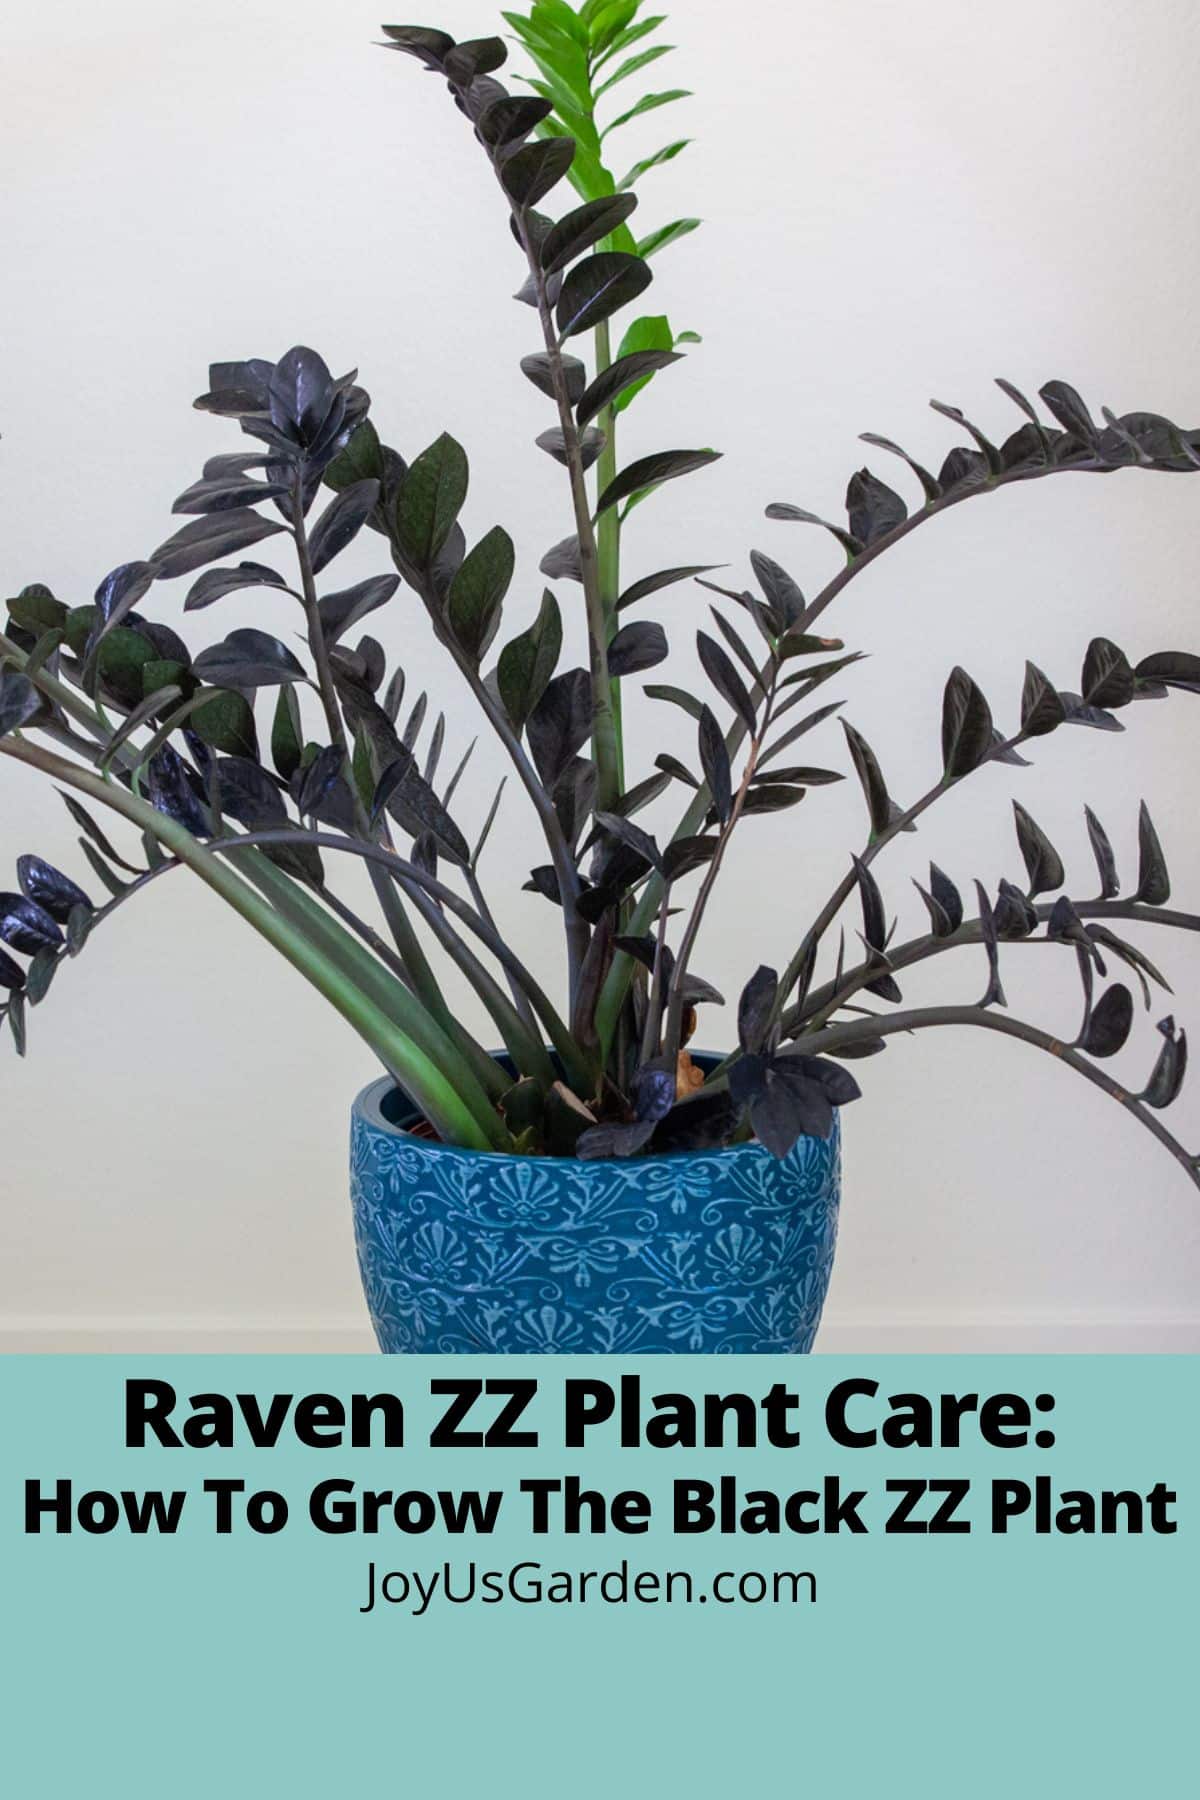  Равен ЗЗ Нега биљака: Како узгајати црну ЗЗ биљку